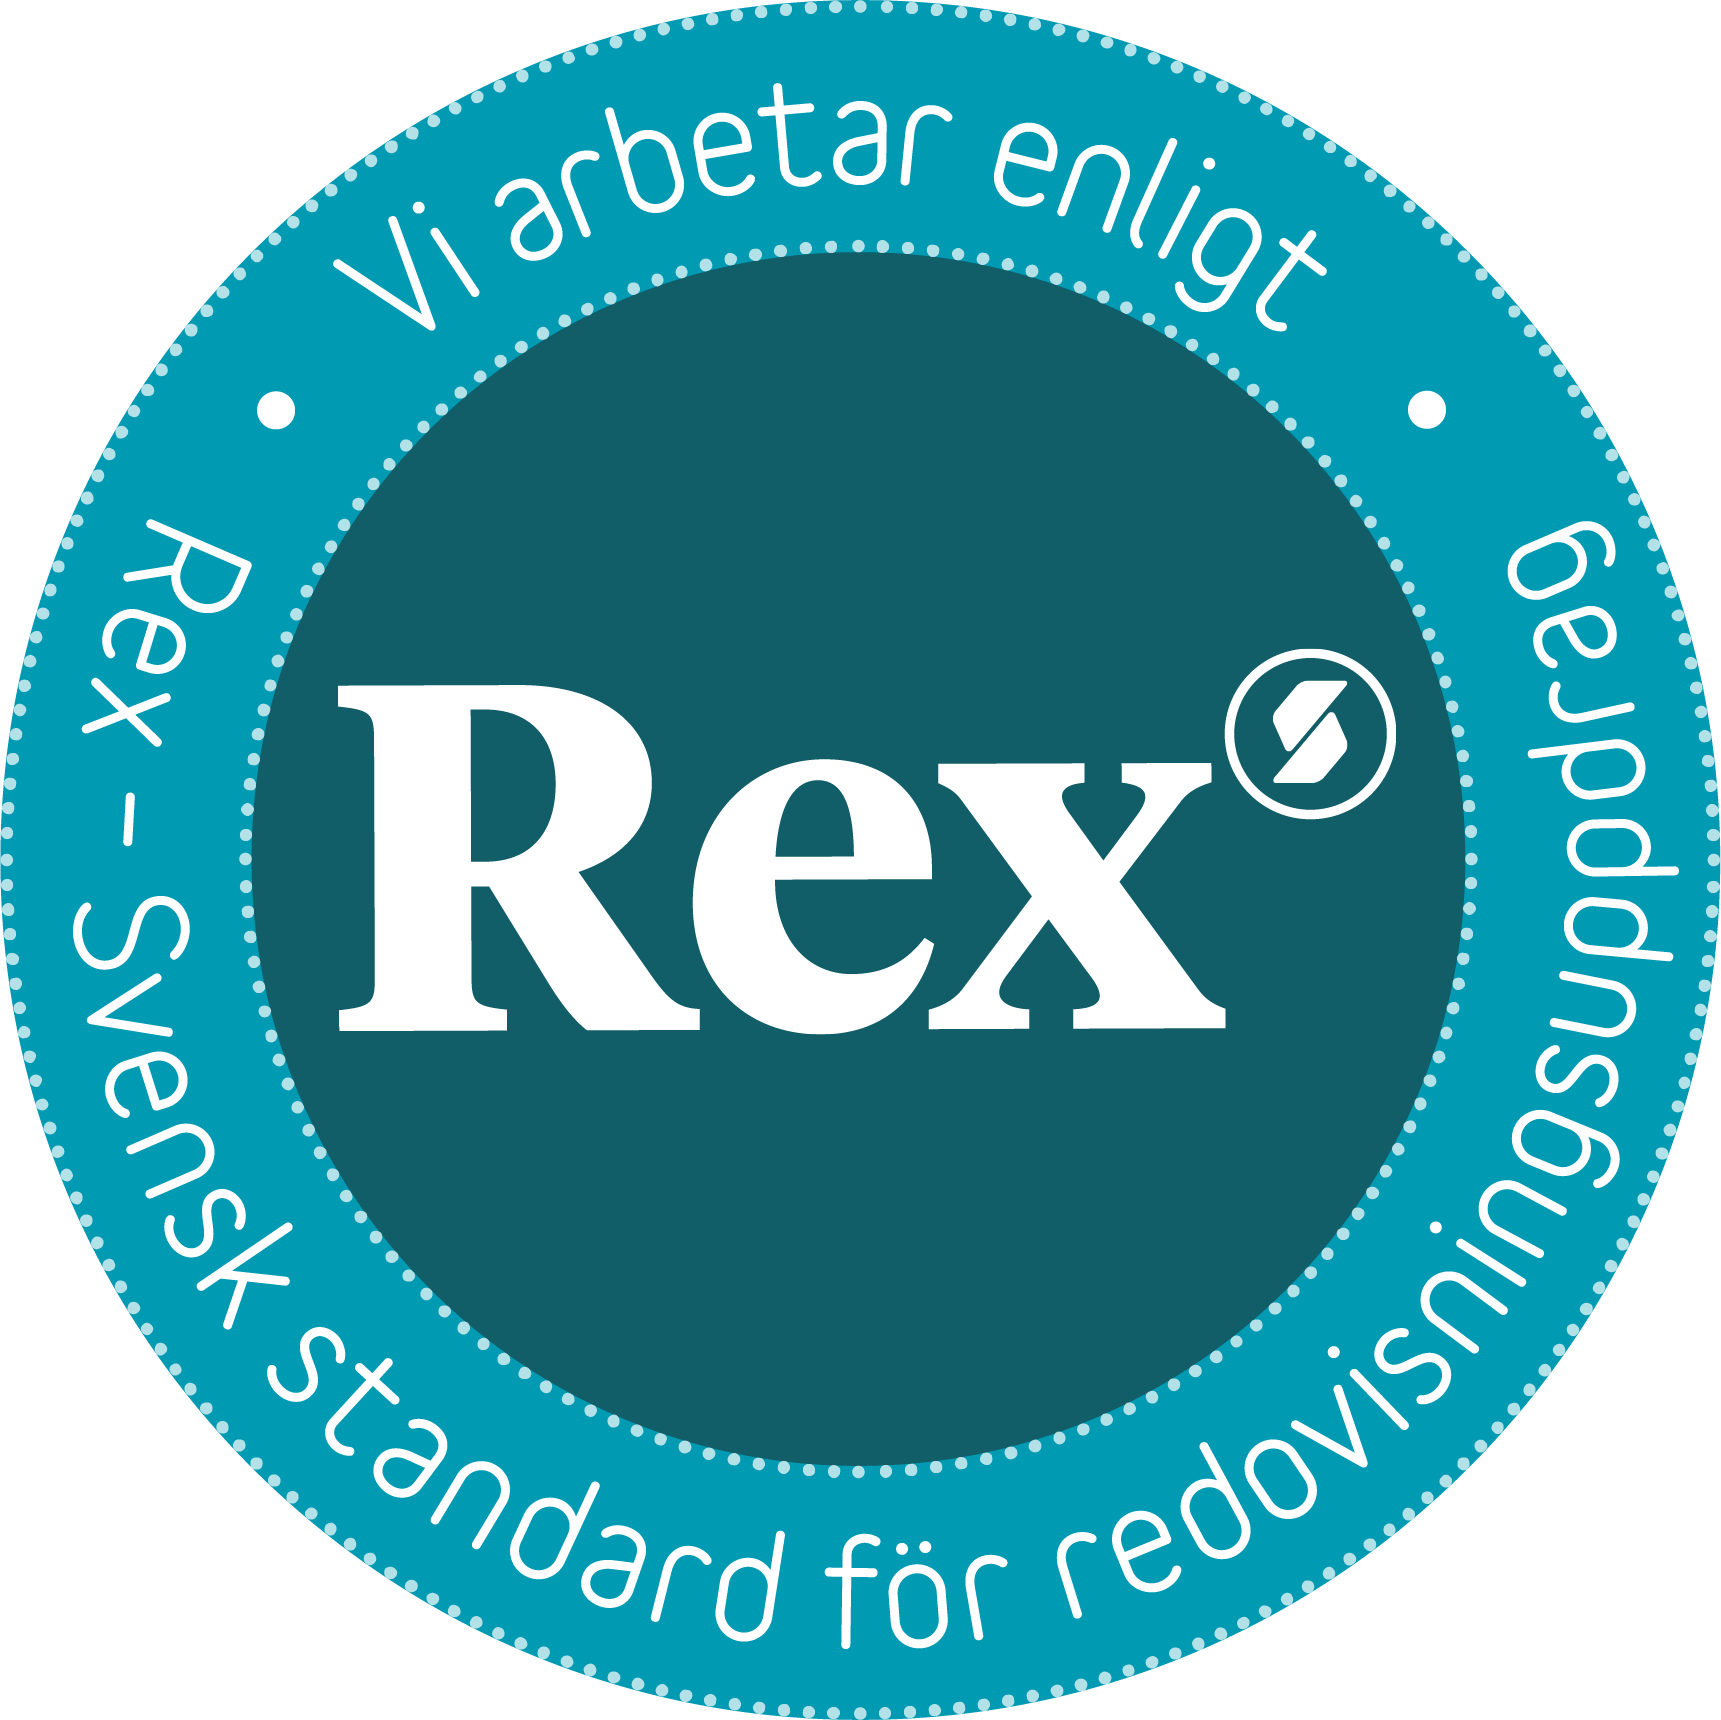 Gothia redovisningsbyrå arbetar enligt Rex - svensk standard för redovisningsuppdrag